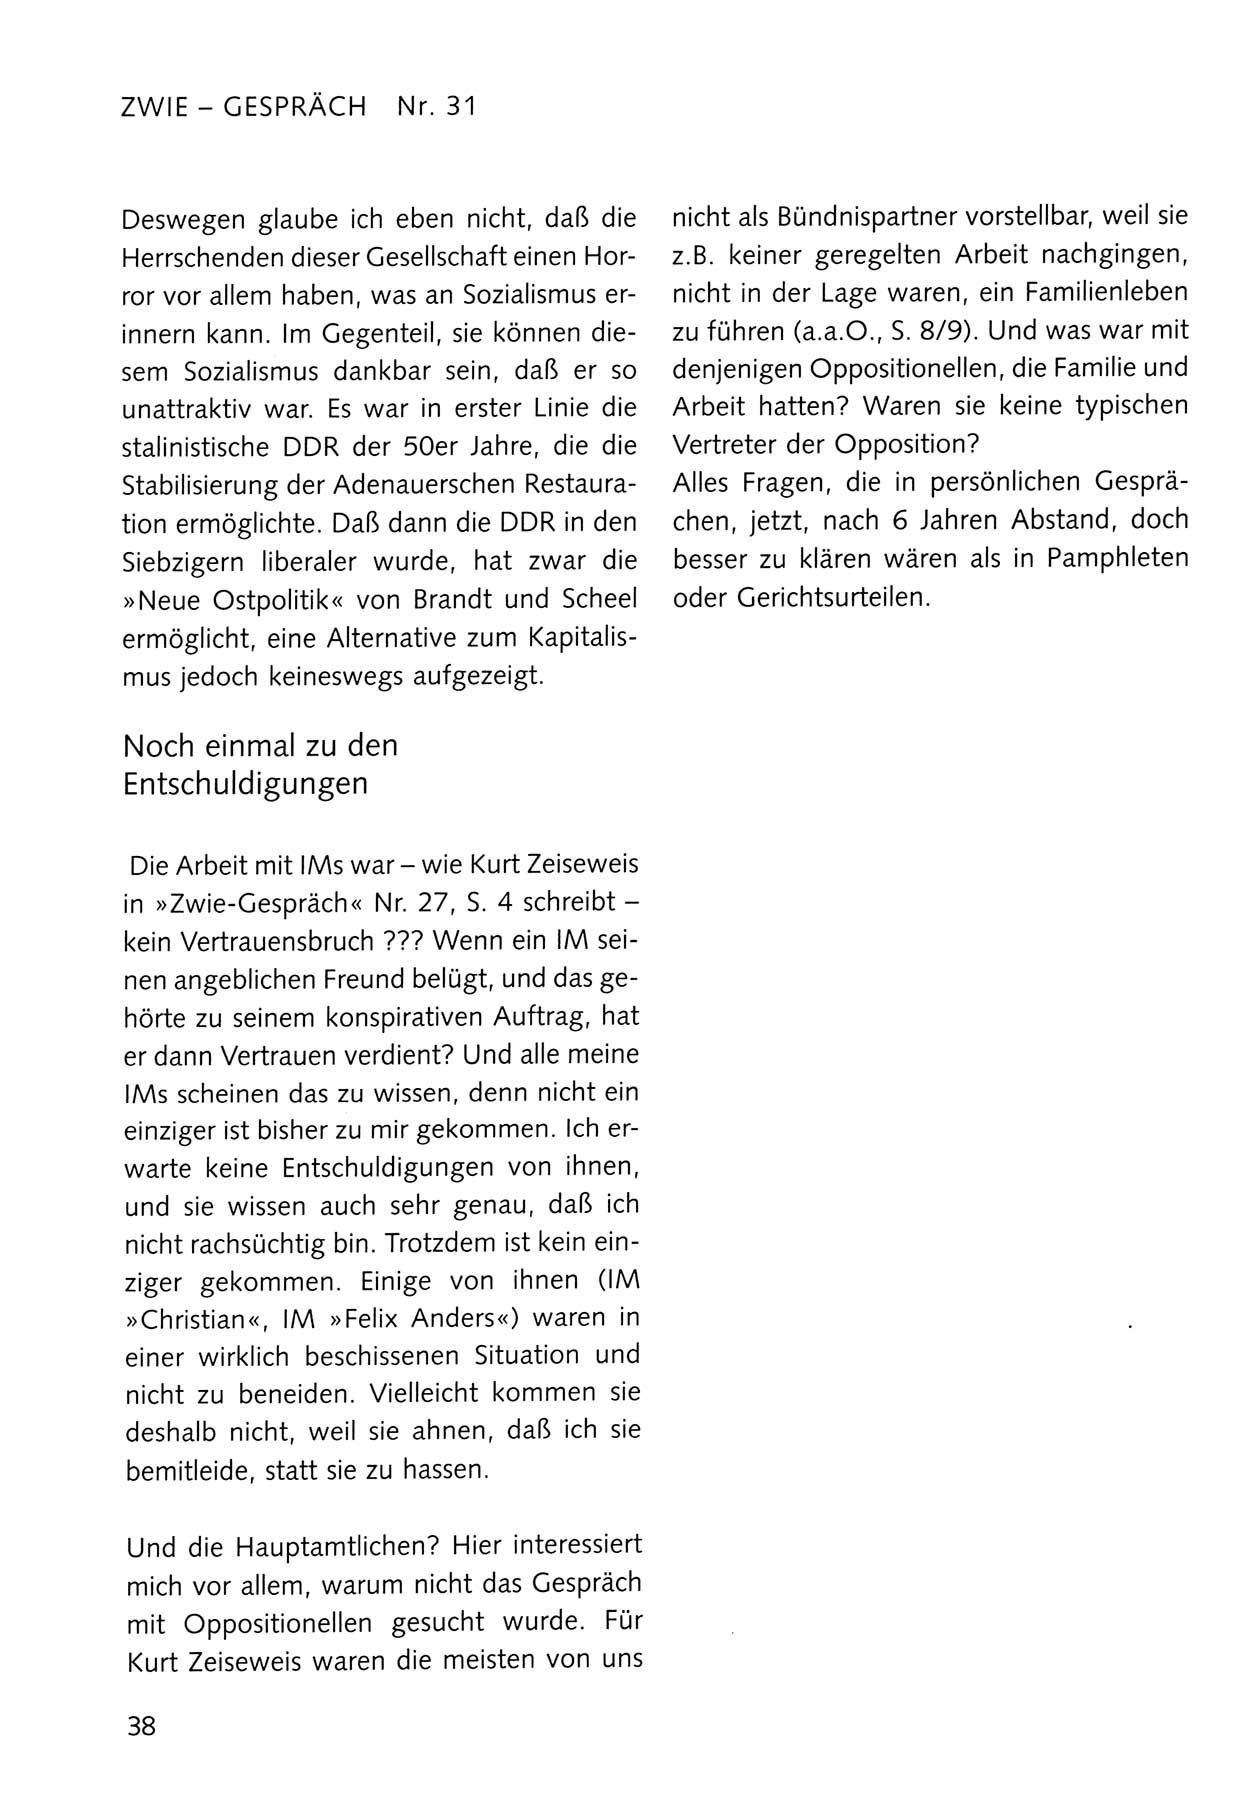 Zwie-Gespräch, Beiträge zum Umgang mit der Staatssicherheits-Vergangenheit [Deutsche Demokratische Republik (DDR)], Ausgabe Nr. 31, Berlin 1995, Seite 38 (Zwie-Gespr. Ausg. 31 1995, S. 38)